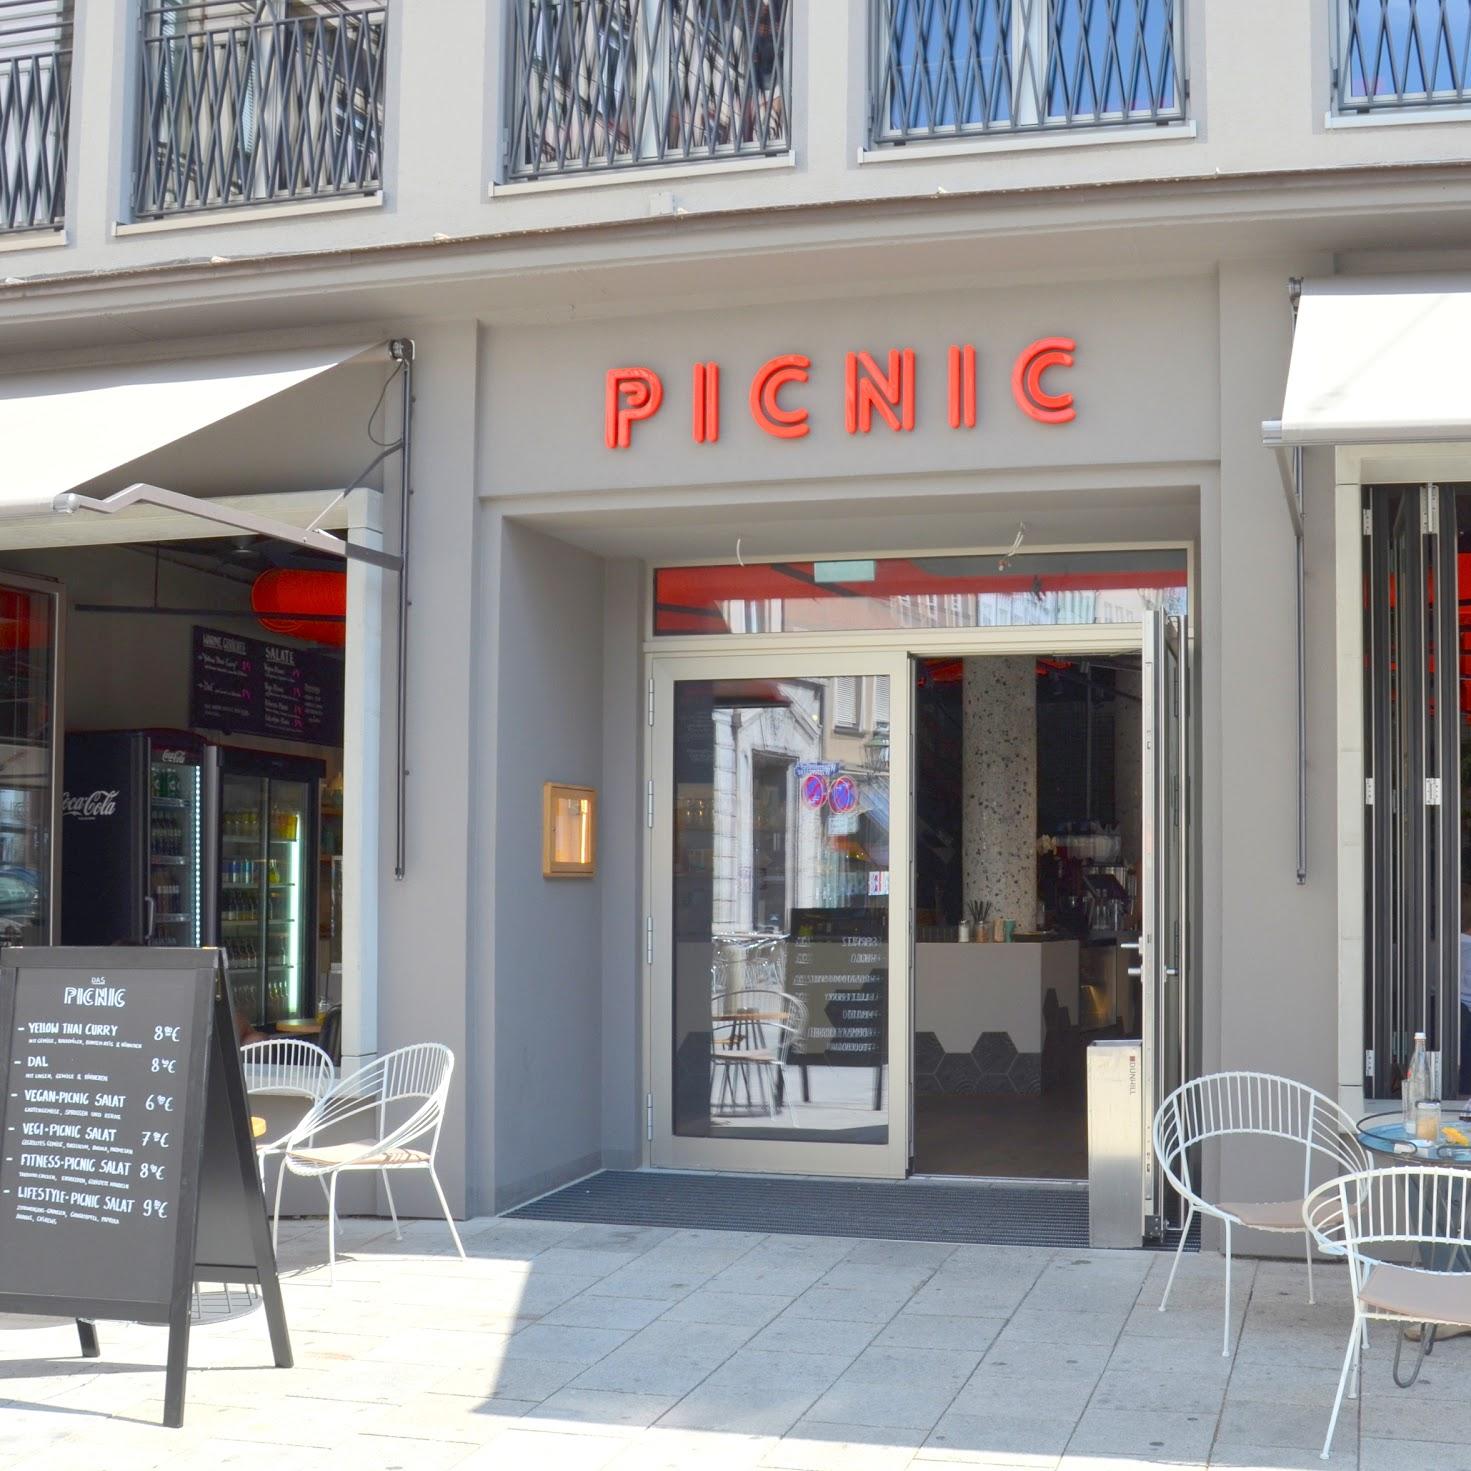 Restaurant "Picnic" in  Augsburg